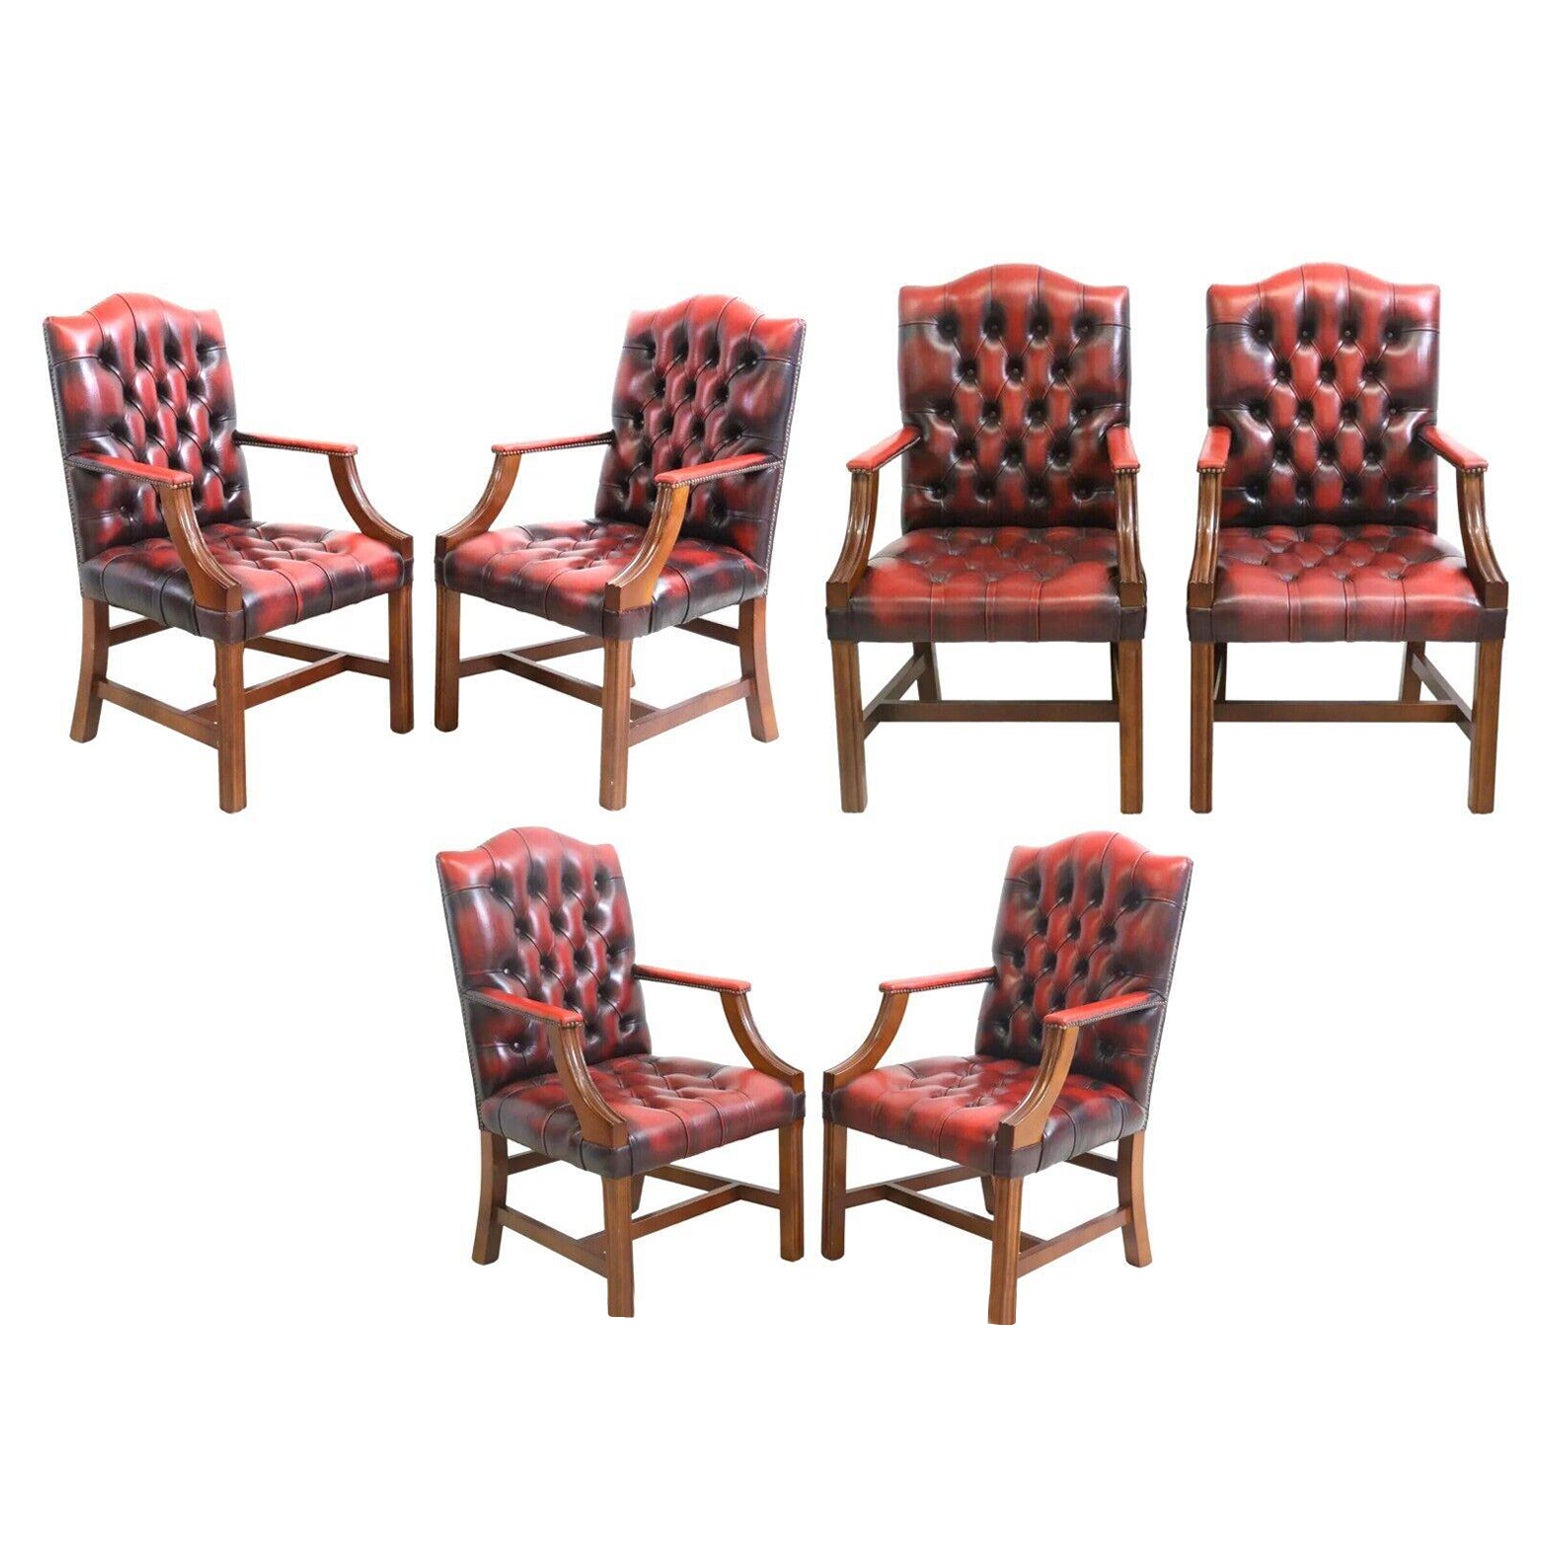 Sessel aus rotem Leder des 20. Jahrhunderts, englisch, sechser-Sessel im GainsBorough-Stil mit Nagelkopfbesatz!